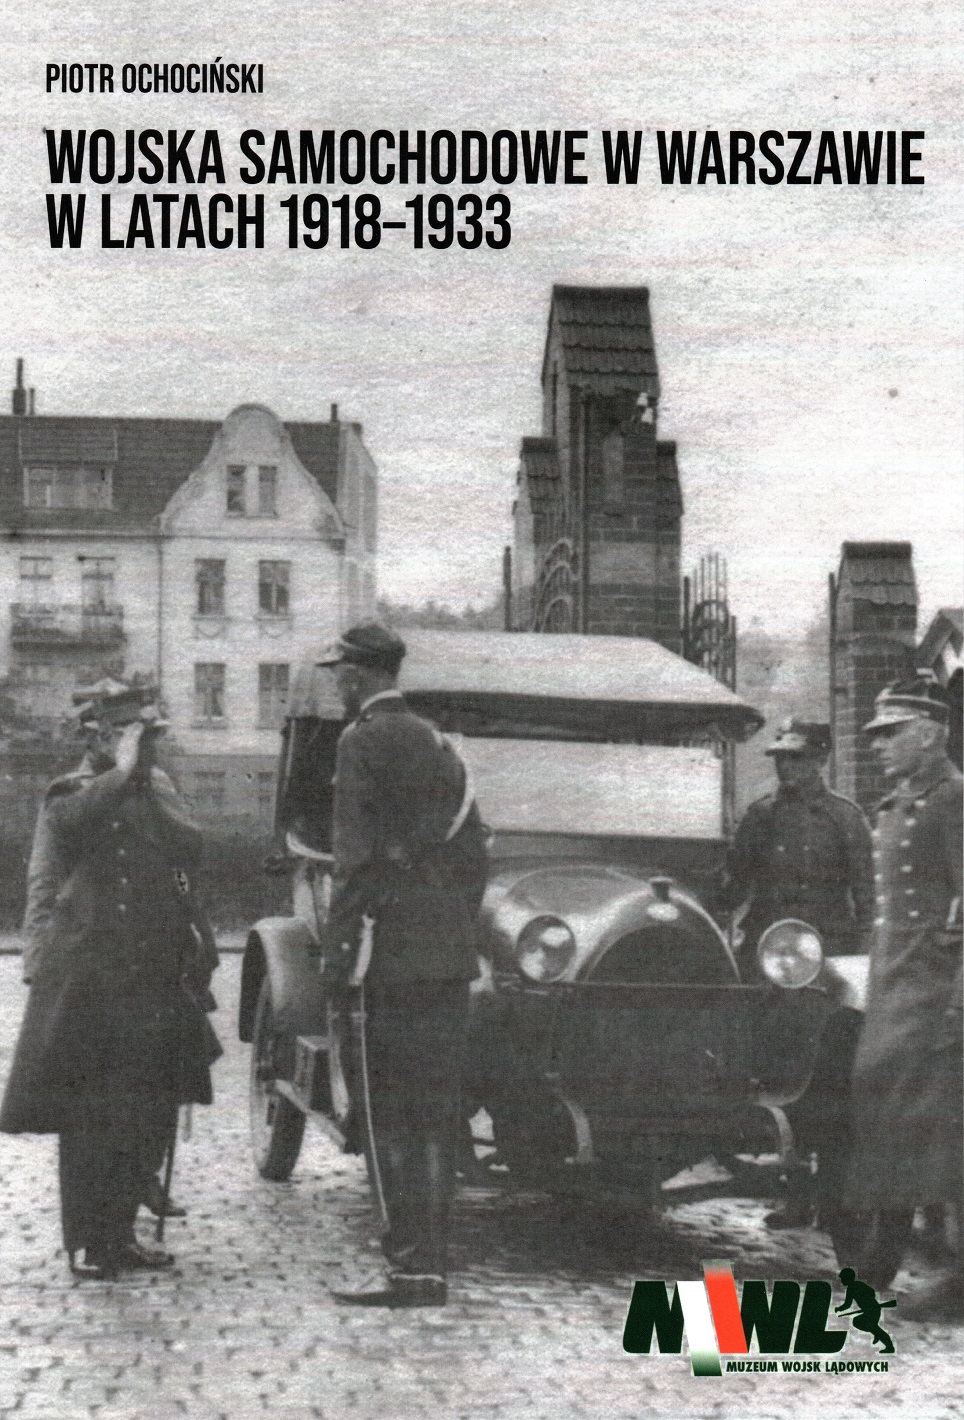 Piotr Ochociński " Wojska samochodowe w Warszawie w latach 1918-1933"